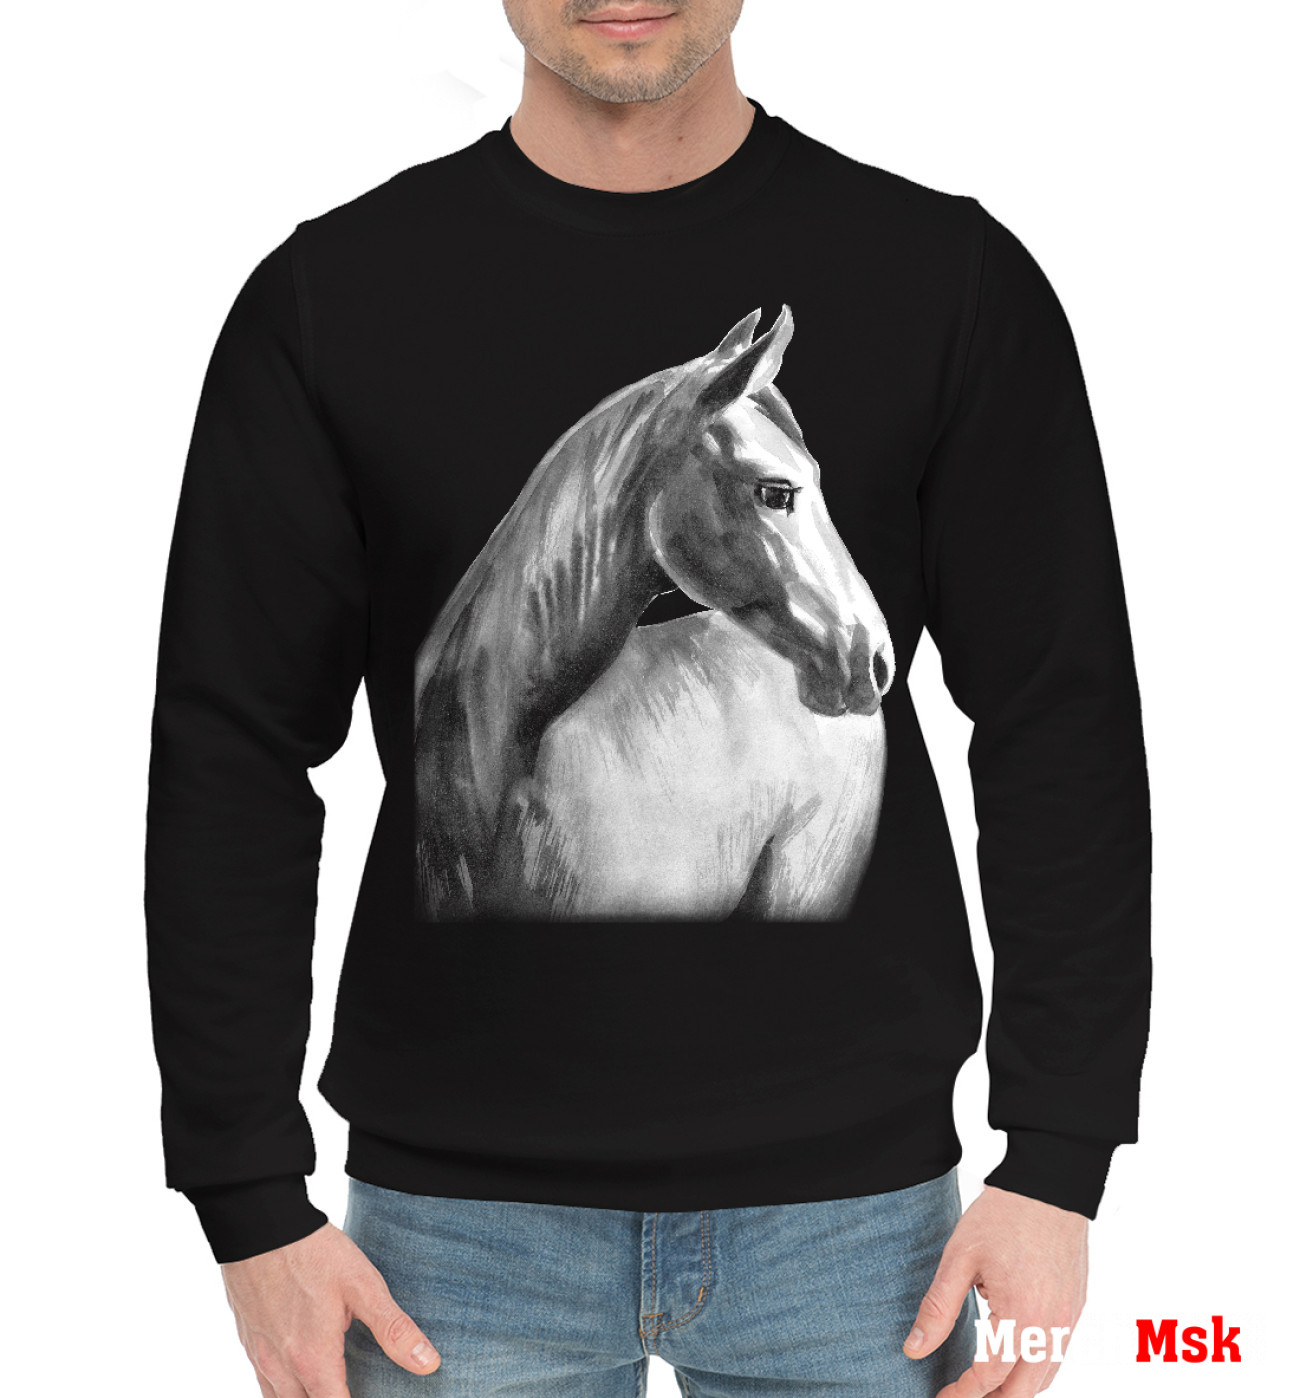 Мужской Хлопковый свитшот Мечтательный конь, артикул: LOS-678594-hsw-2